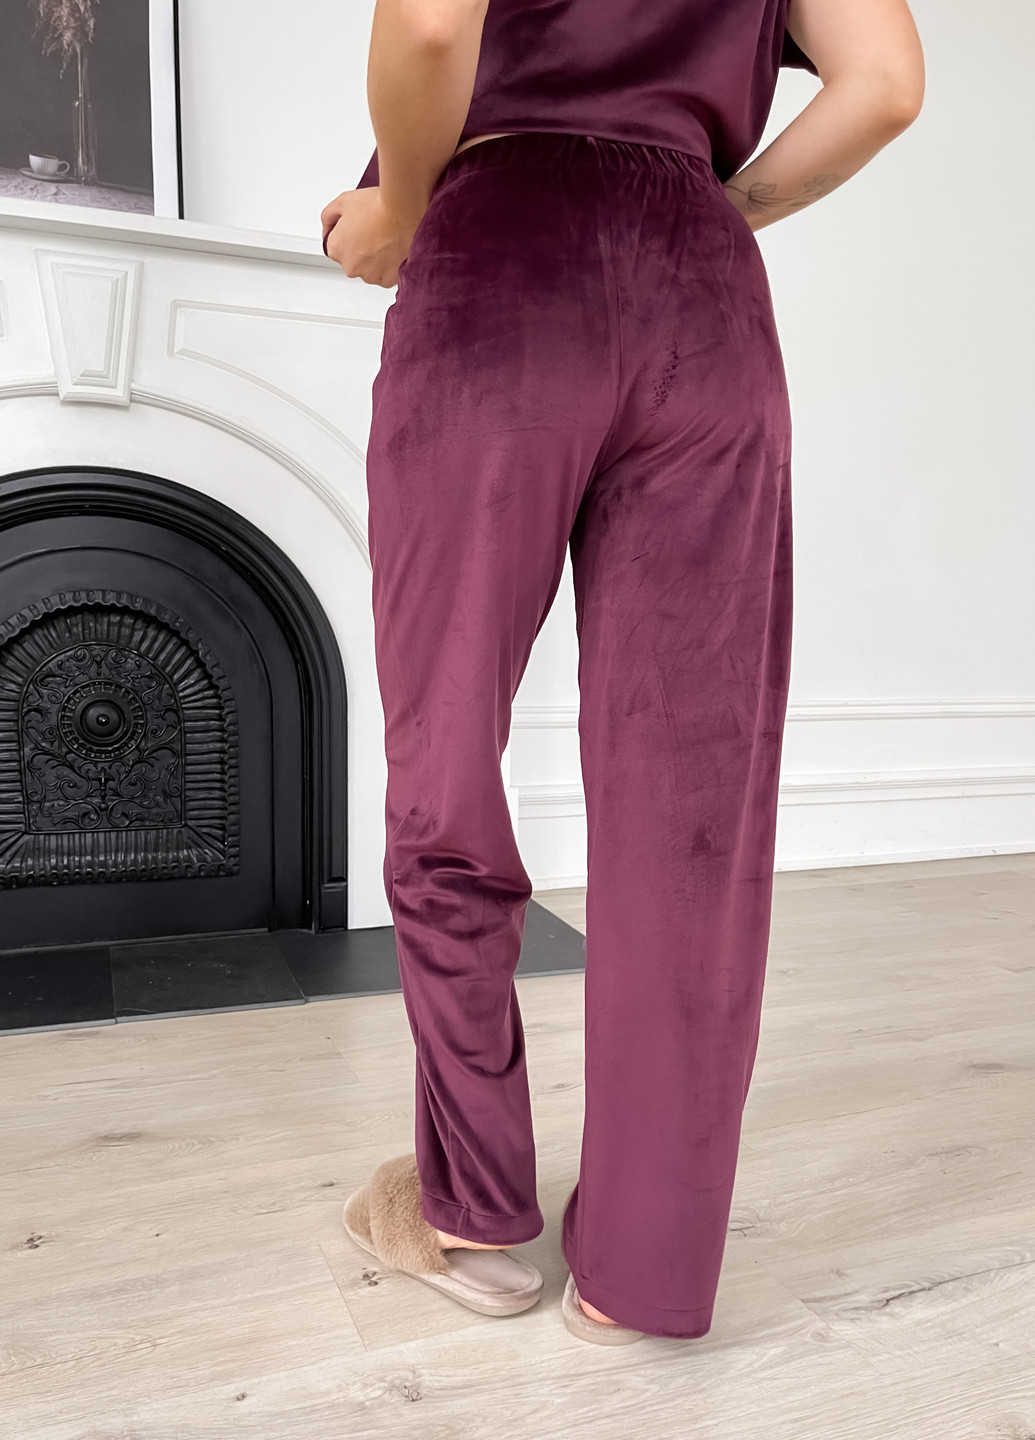 Бордовая зимняя теплая велюровая женская пижама 3: халат, брюки, футболка бордового цвета 100000212 кофта + футболка + брюки Merlini Буя